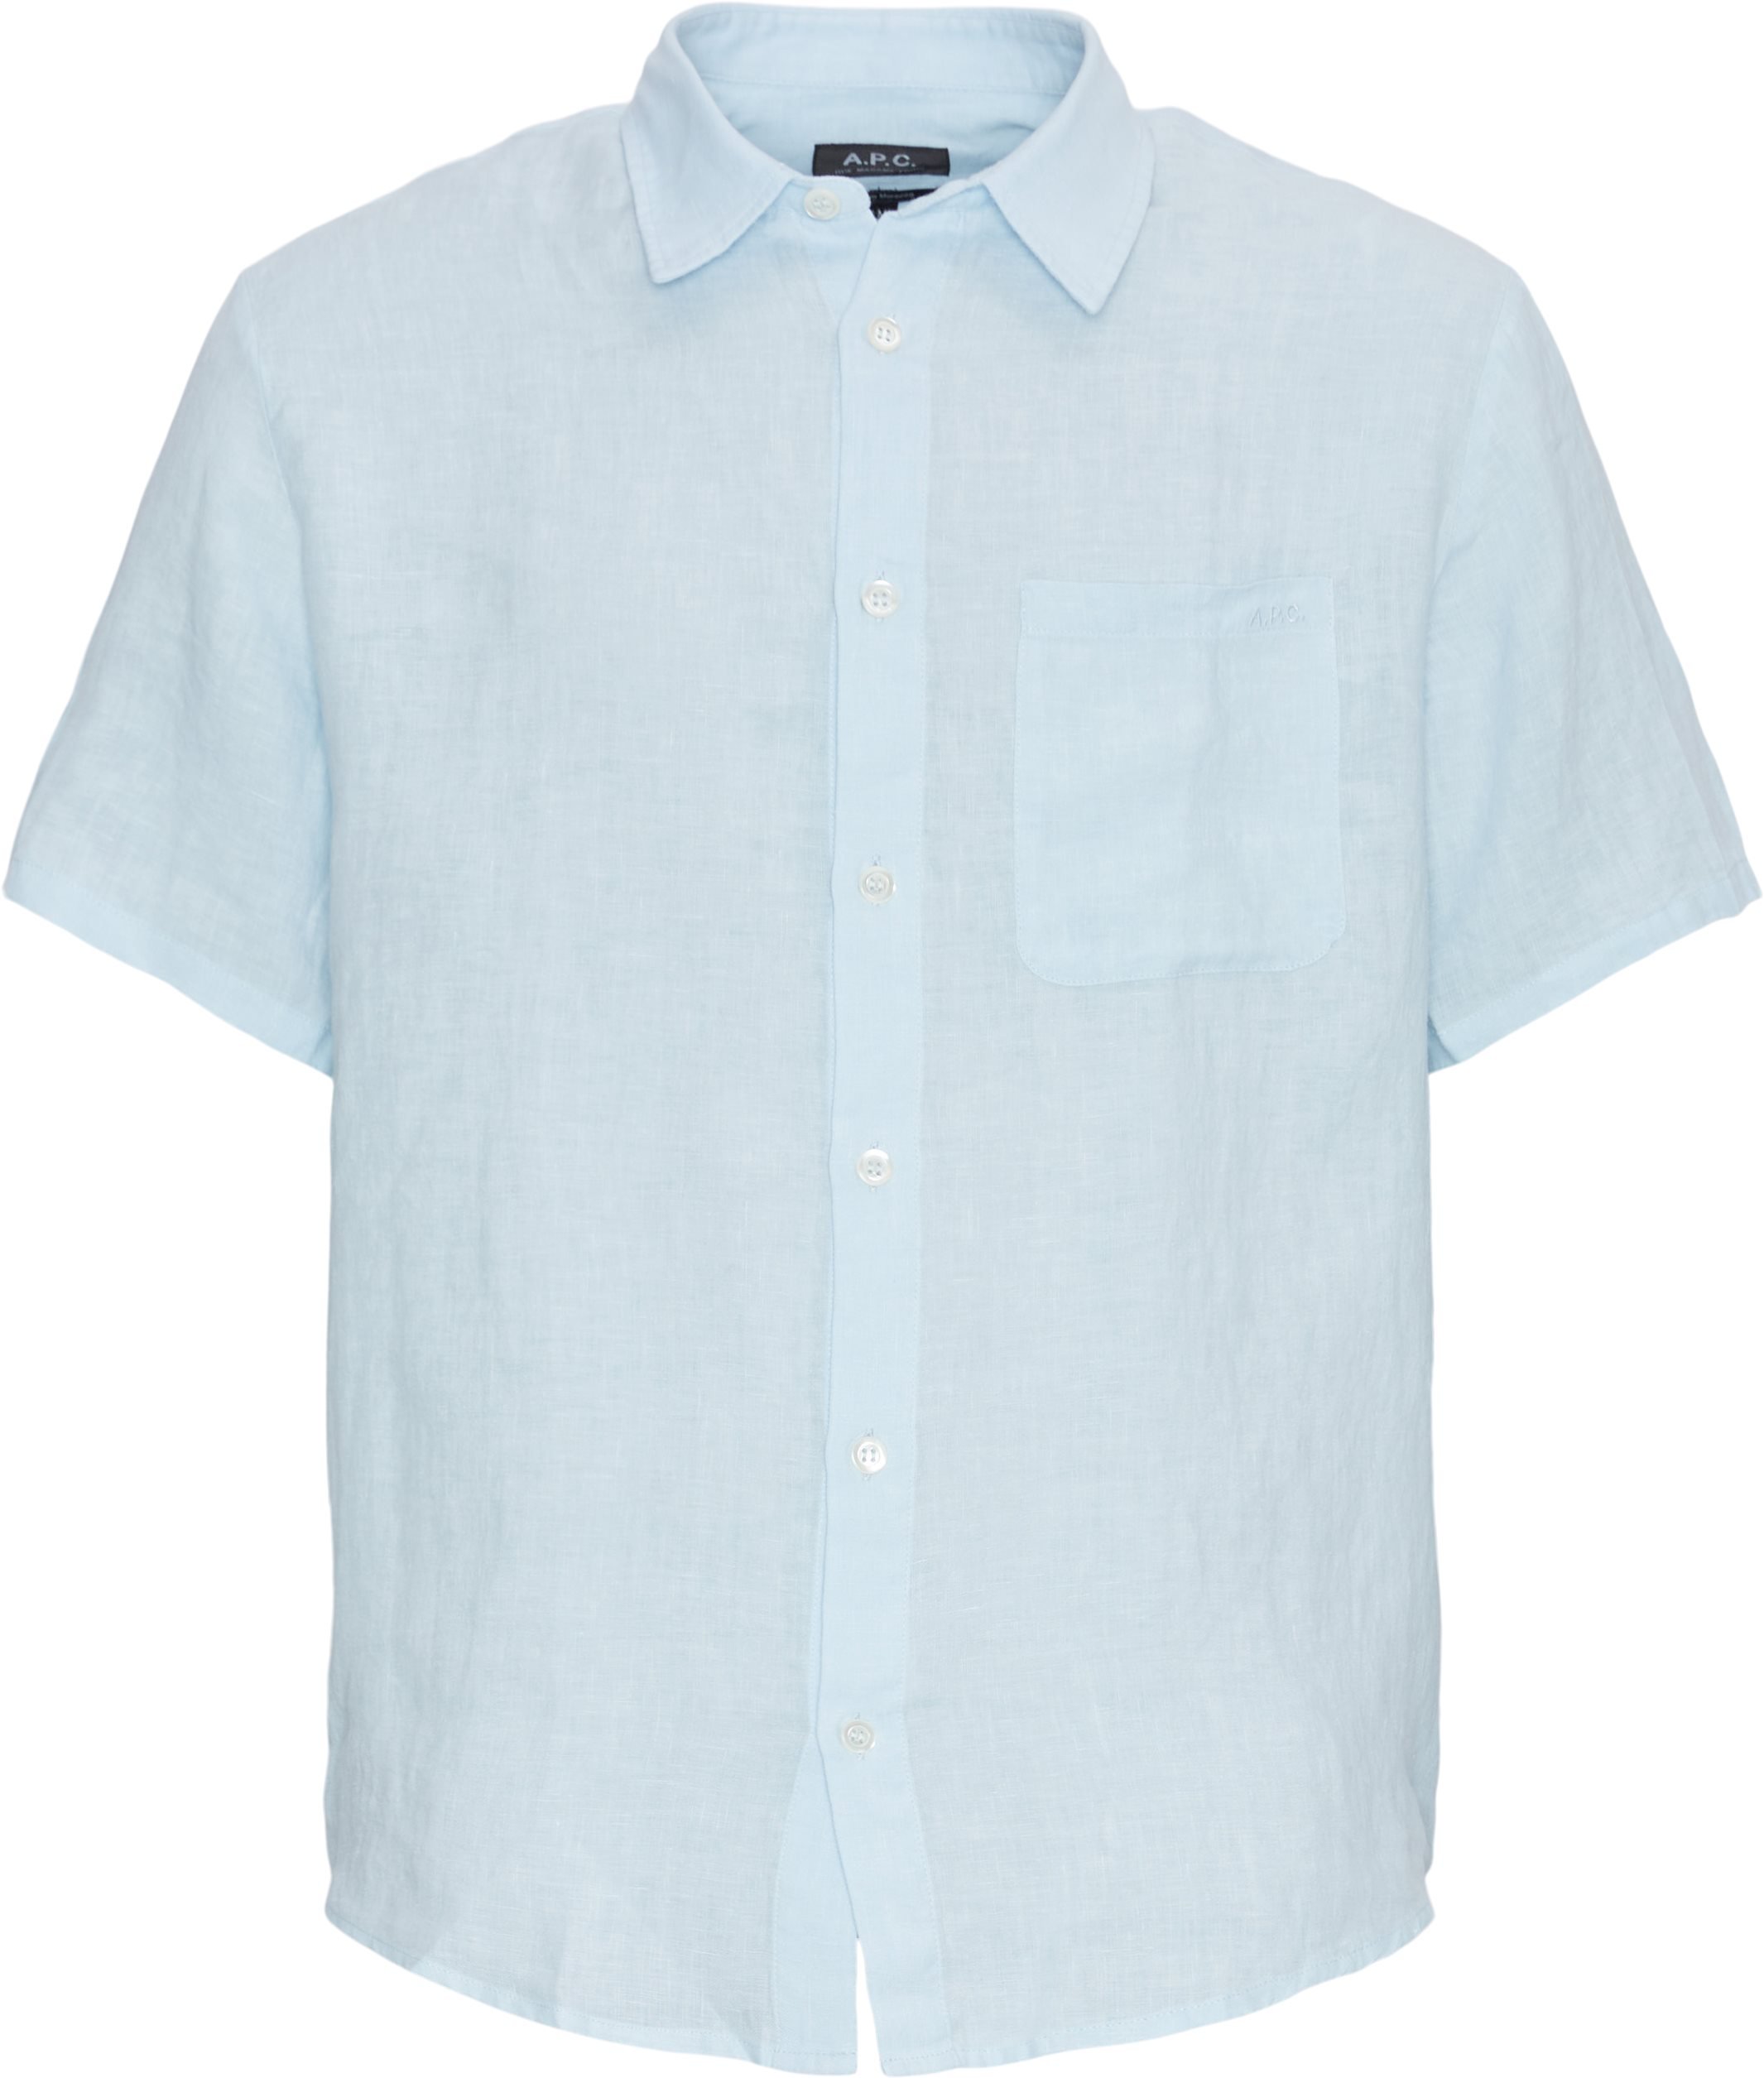 A.P.C. Kortærmede skjorter LIAEK-H12551 Blå